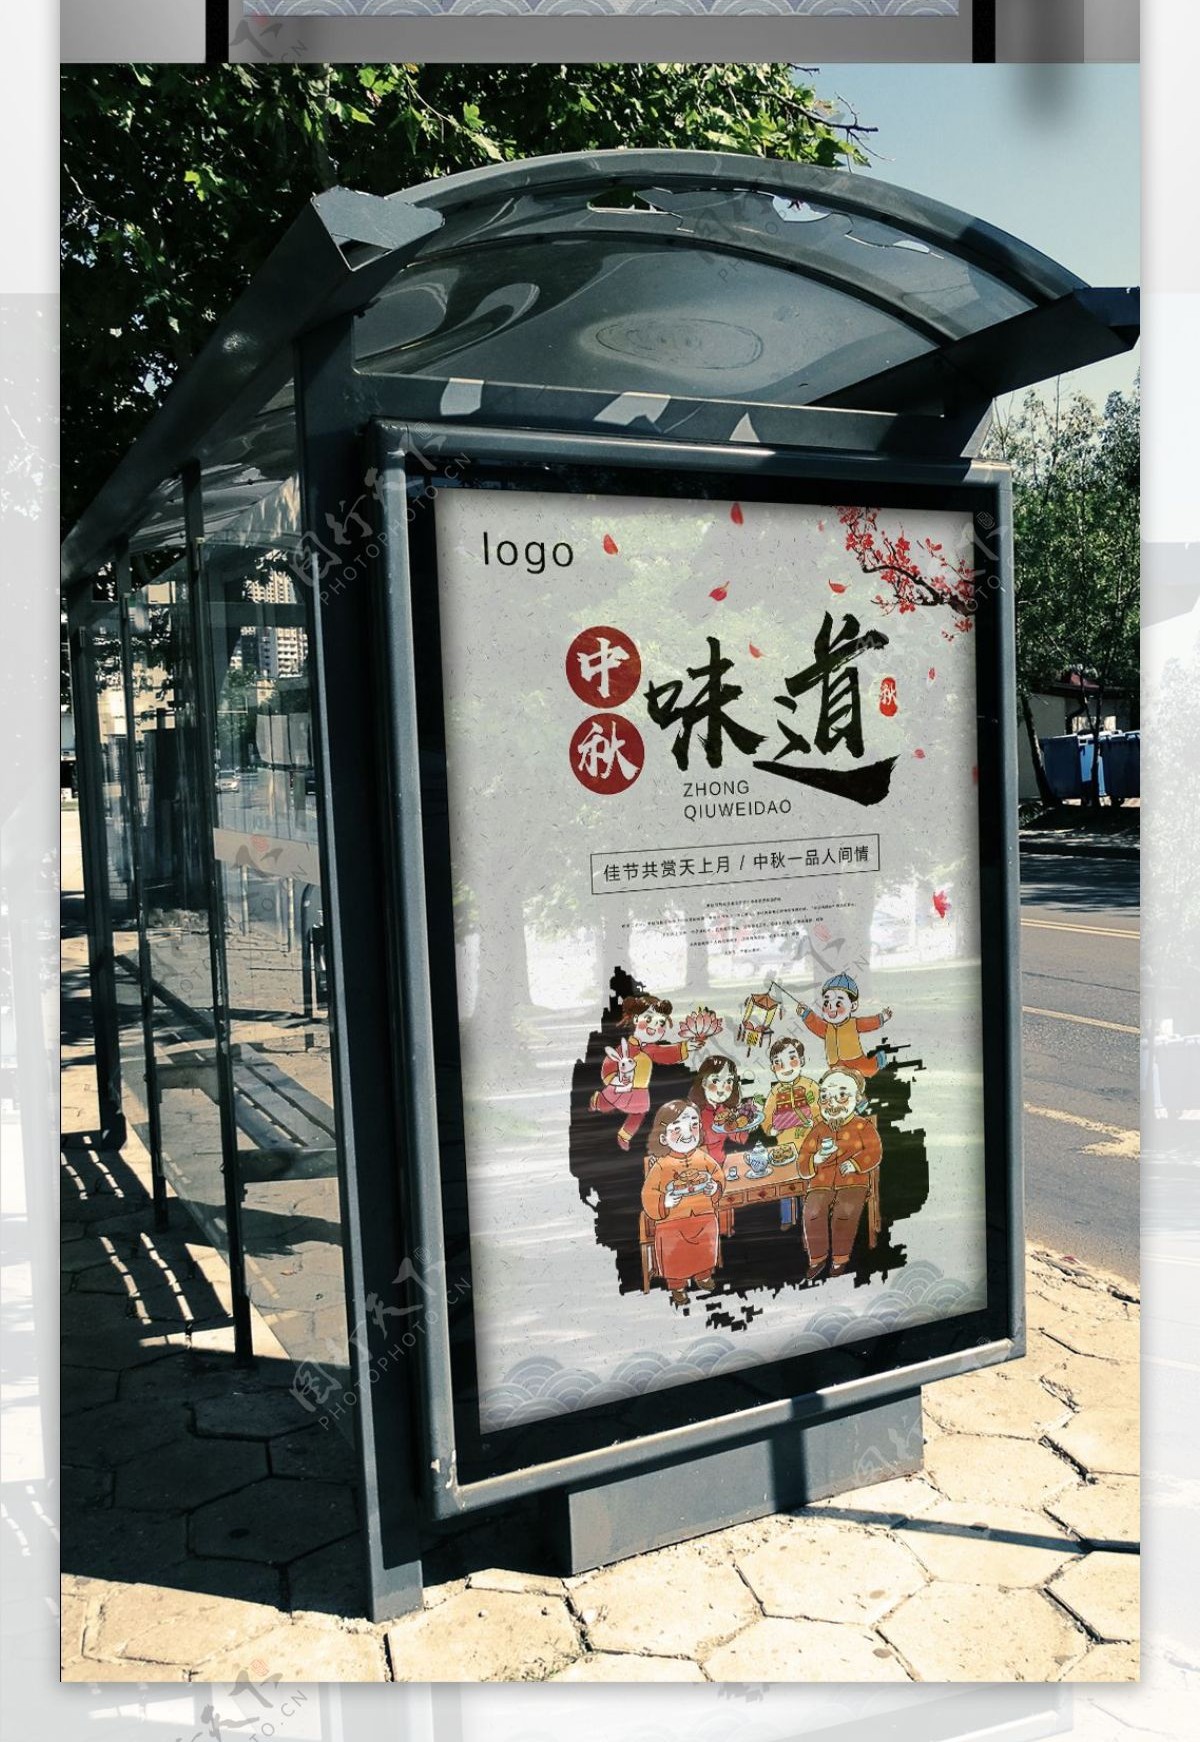 中国风中秋味道节日海报设计